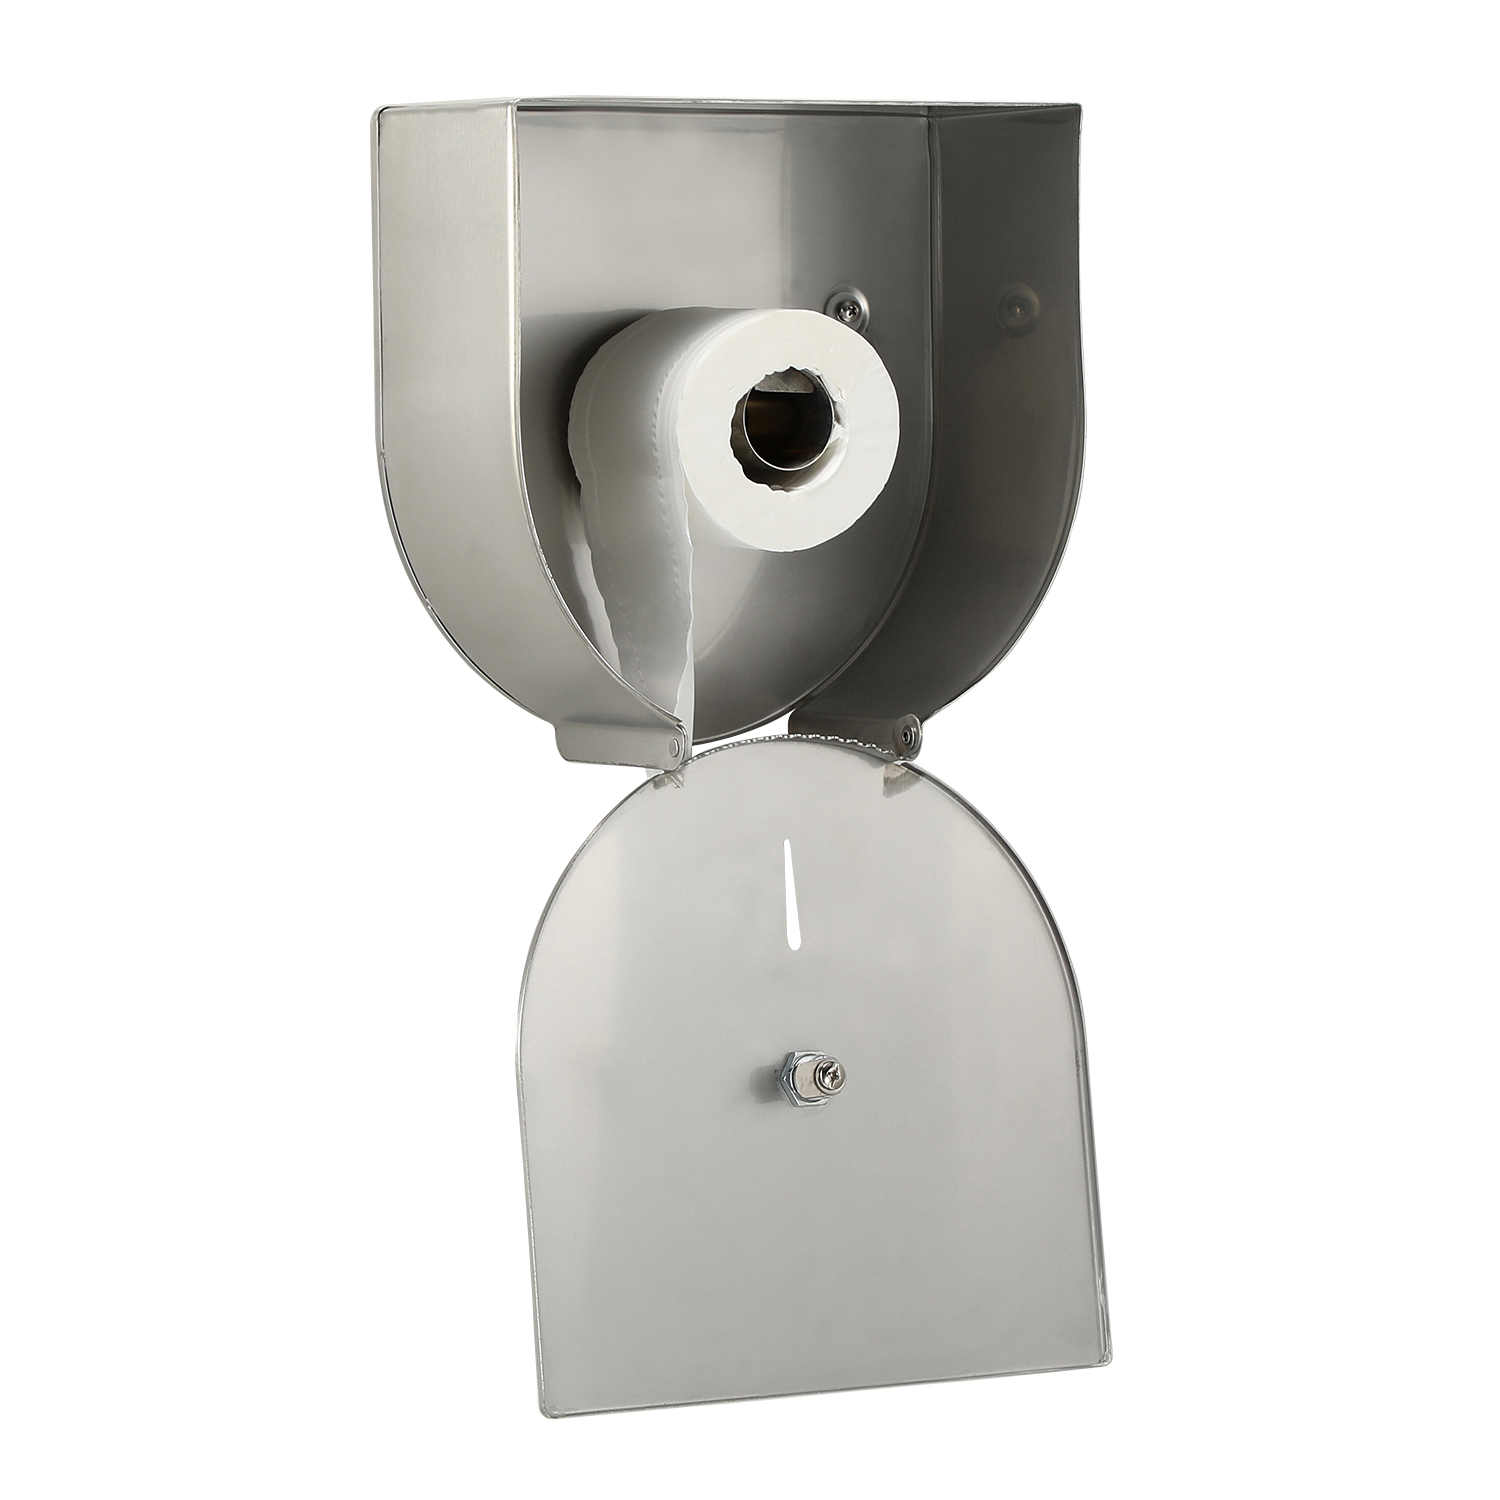 Stainless Steel Toilet Tissue Dispenser